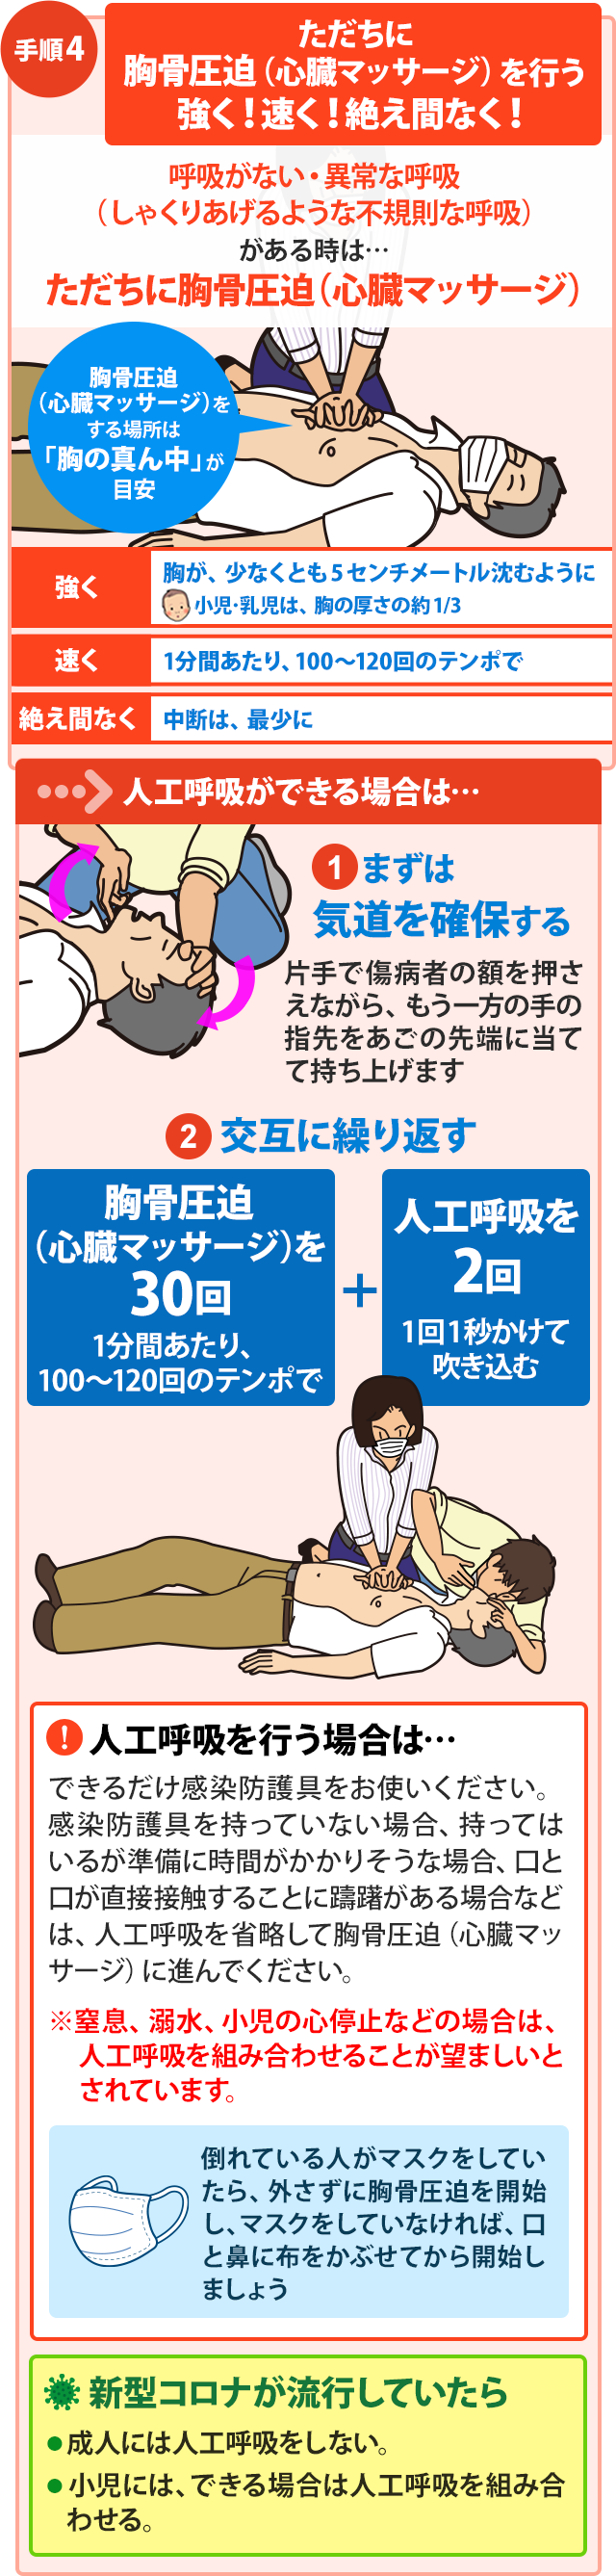 手順4：呼吸がないか、異常な呼吸（しゃくりあげるような不規則な呼吸）があるときは、ただちに胸骨圧迫（心臓マッサージ）を行う。強く（胸が、少なくとも5センチメートル沈むように。小児･乳児は、胸の厚さの約3分の1）、速く（1分間あたり、100～120回のテンポで）、絶え間なく（中断は、最少に）。胸骨圧迫（心臓マッサージ）をする場所は「胸の真ん中」が目安。人工呼吸ができる場合は、まずは気道を確保する。片手で傷病者の額を押さえながら、もう一方の手の指先をあごの先端に当てて持ち上げる。胸骨圧迫（心臓マッサージ）を30回（1分間あたり、100～120回のテンポで）の後に人工呼吸を2回（1回1秒かけて吹き込む）。これを交互に繰り返す。人工呼吸を行う場合はできるだけ感染防護具をお使いください。感染防護具を持っていない場合、持ってはいるが準備に時間がかかりそうな場合、口と口が直接接触することに躊躇がある場合などは、人工呼吸を省略して胸骨圧迫（心臓マッサージ）に進んでください。※窒息、溺水、小児の心停止などの場合は、人工呼吸を組み合わせることが望ましいとされています。新型コロナが流行していたら…成人には人工呼吸をしない。小児には、できる場合は人工呼吸を組み合わせる。